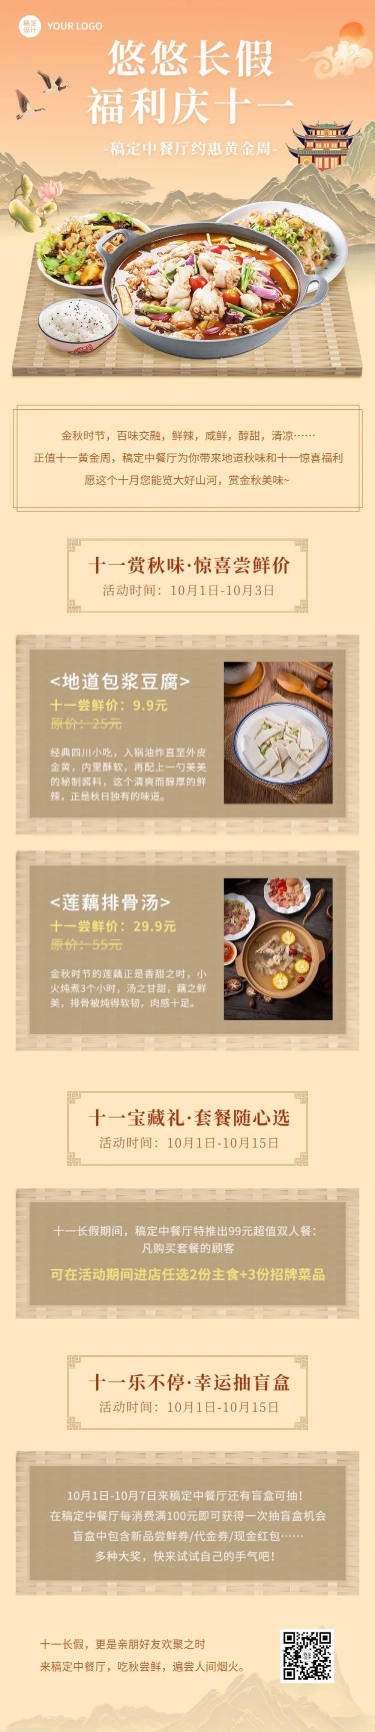 十一黄金周国庆餐饮中餐厅节日营销文章长图预览效果